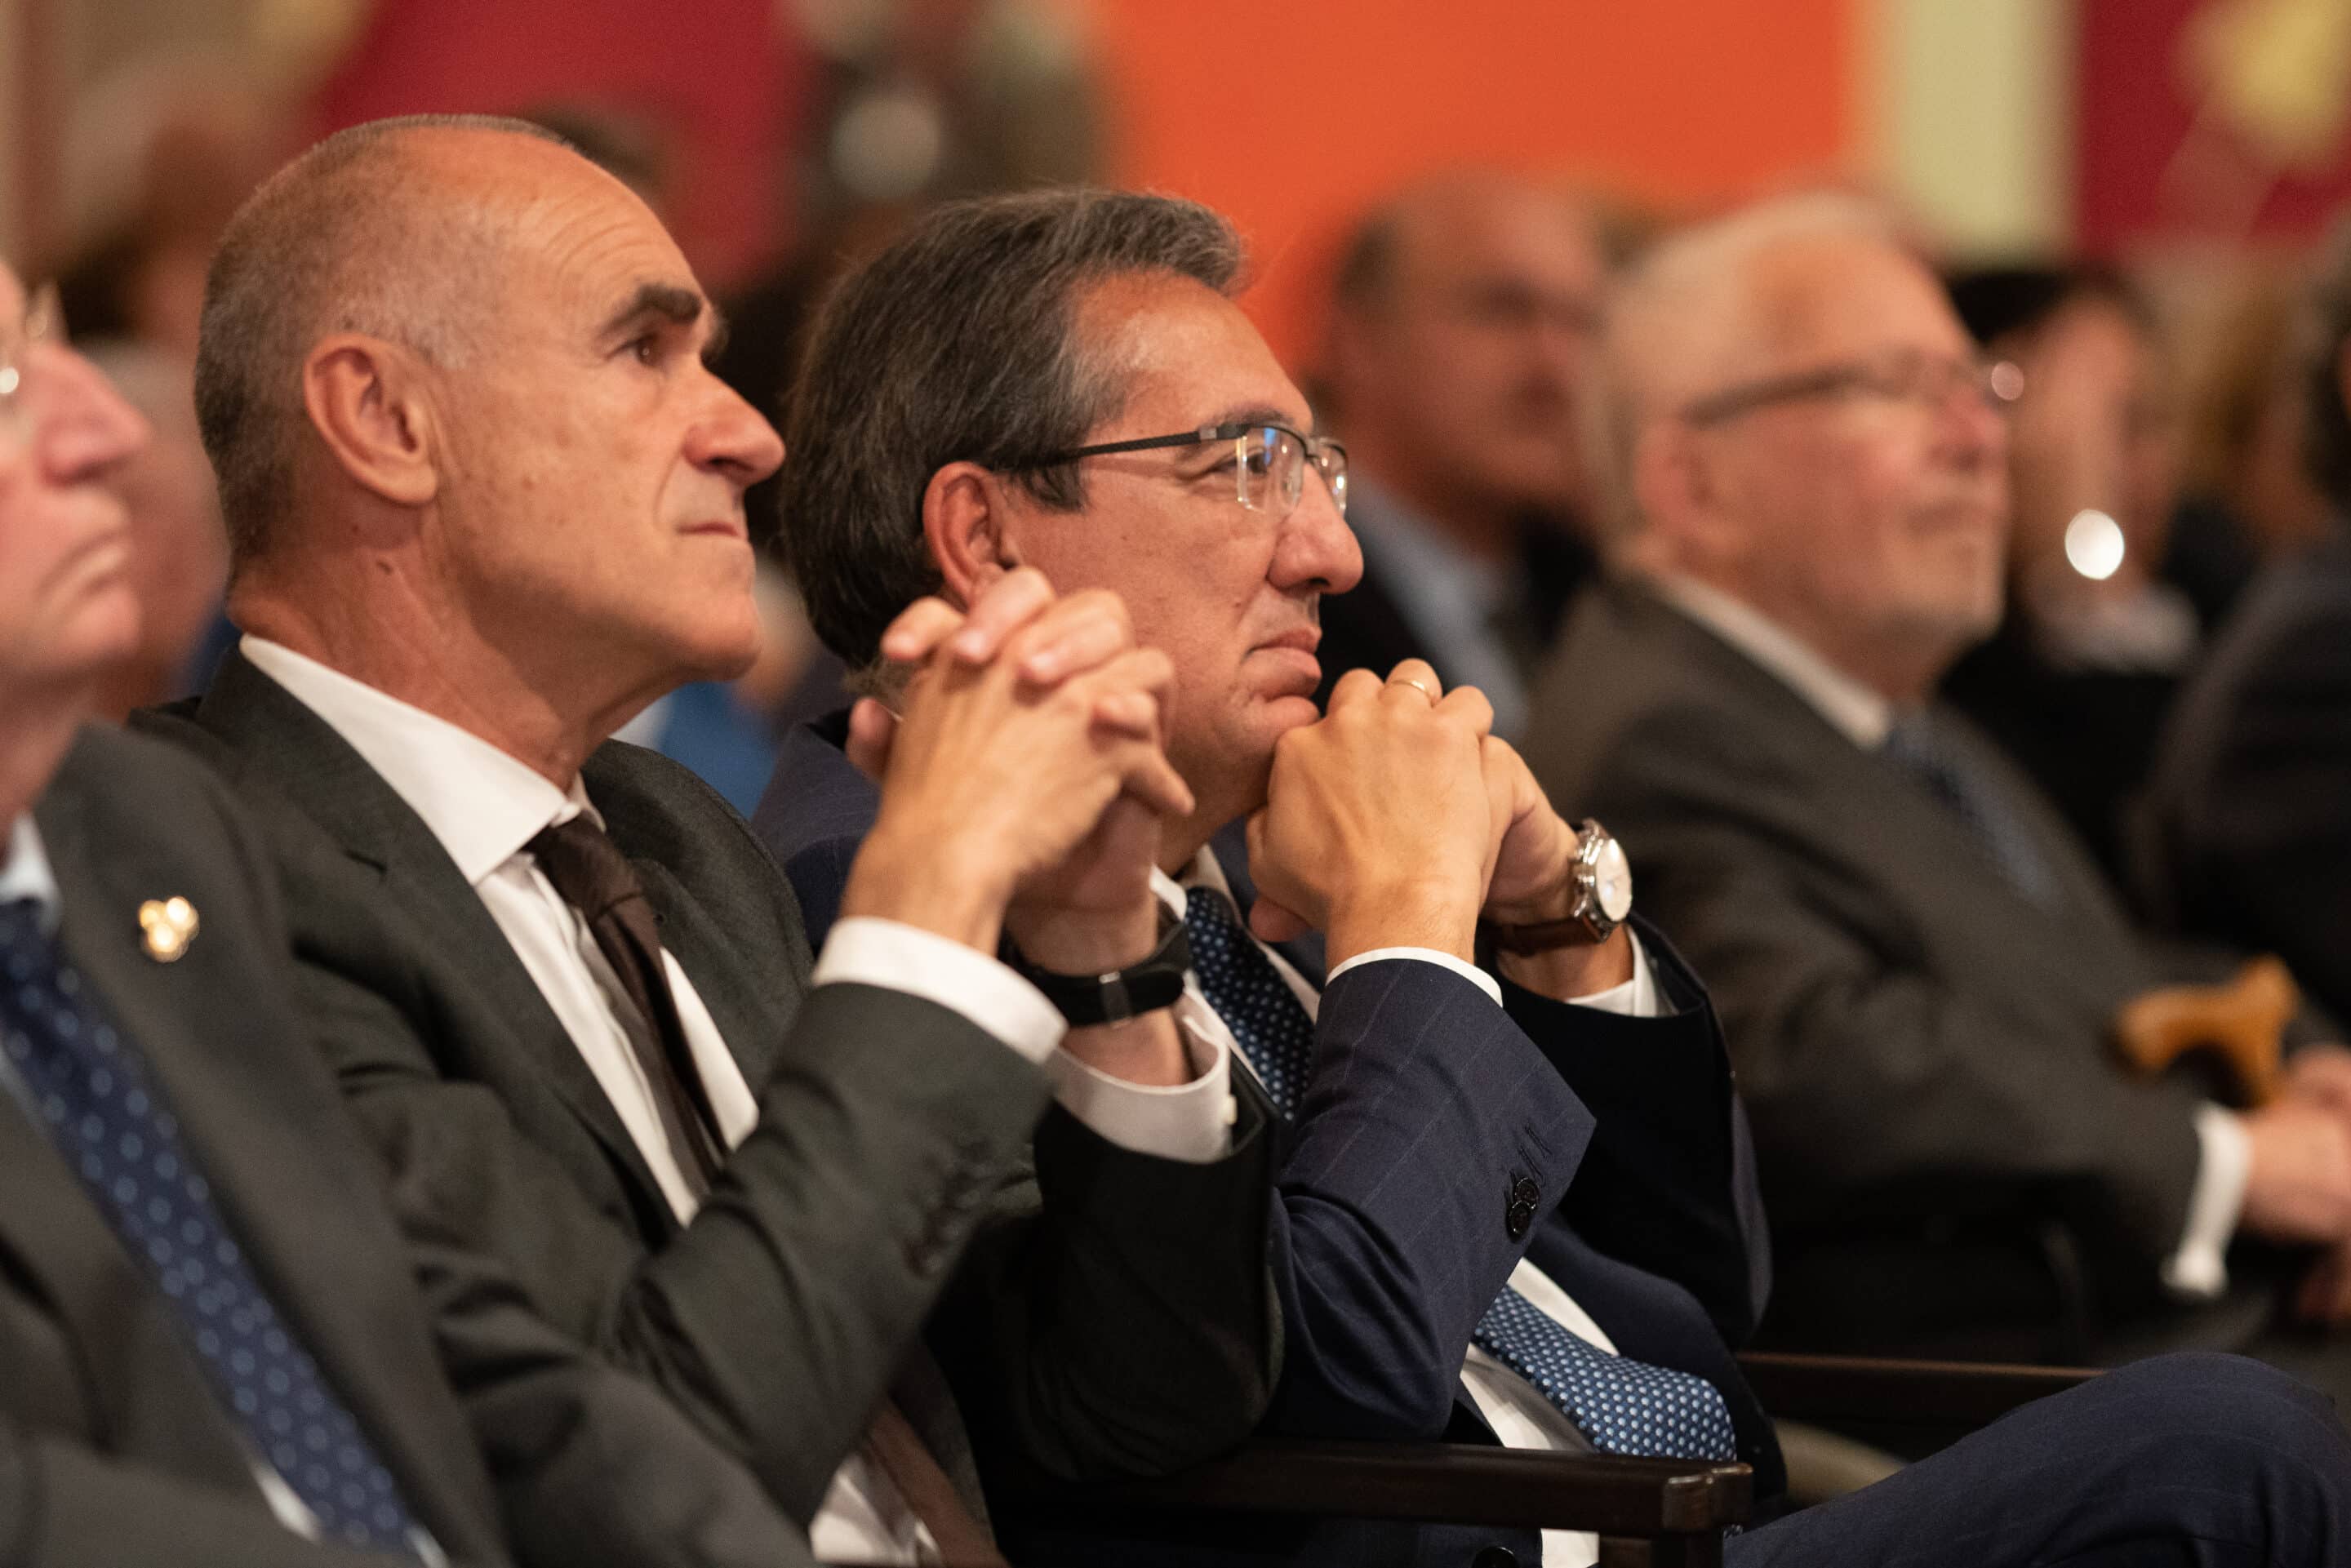 La Fundación Cajasol contempla en su programa “Tramos de Cuaresma” en Sevilla, Córdoba, Cádiz y Huelva, los Premios “Gota a Gota de Pasión”.